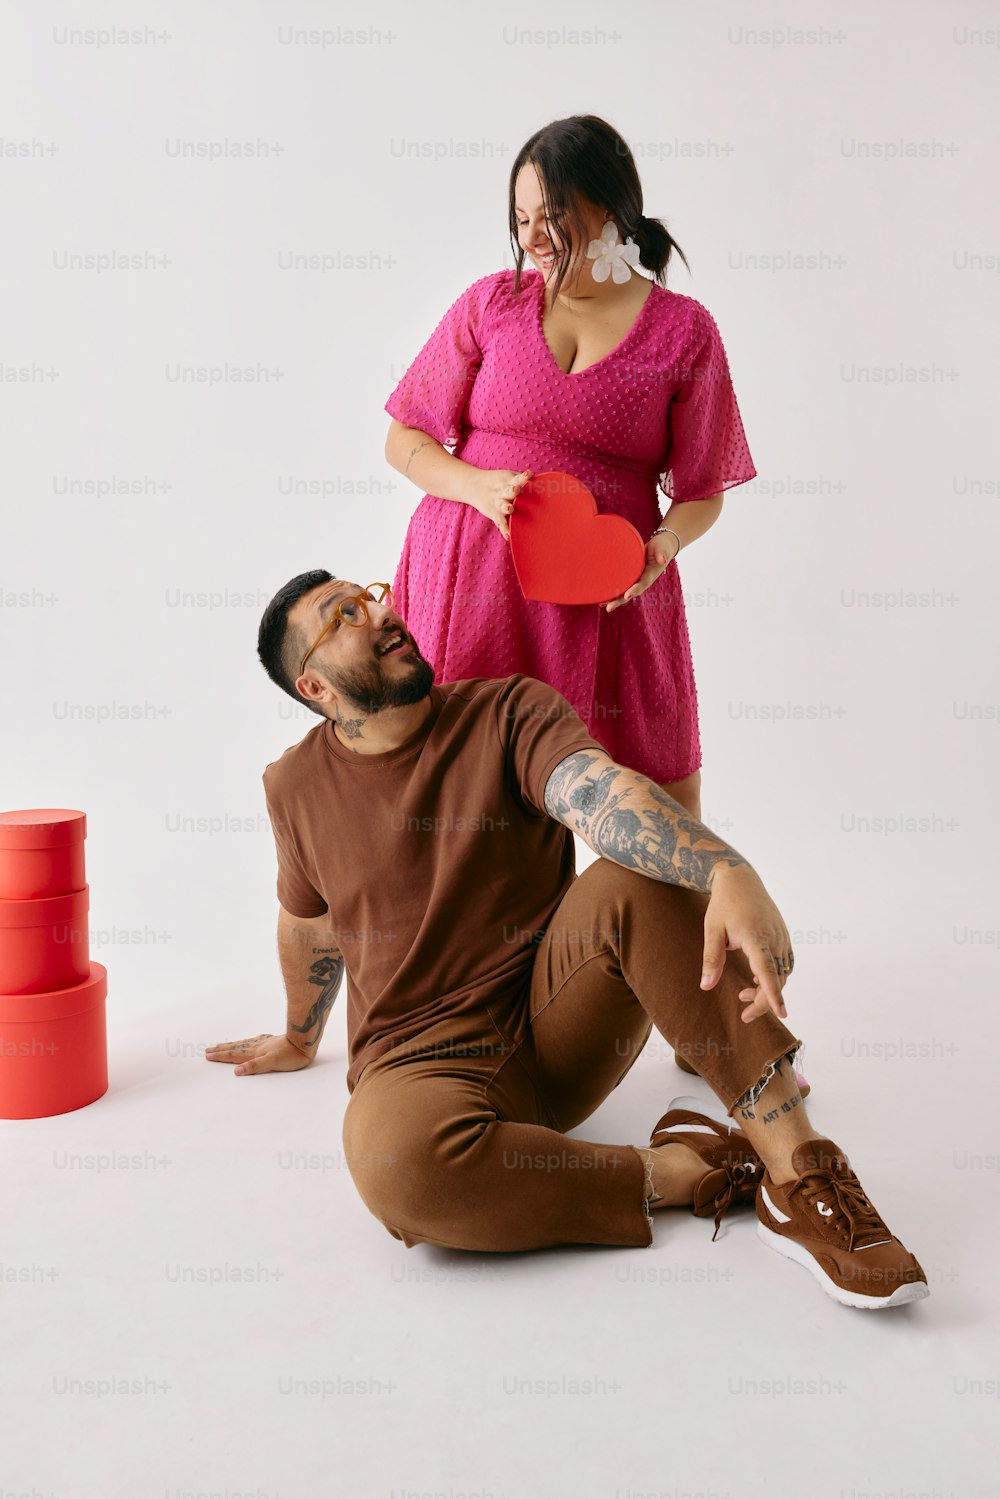 um homem segurando um frisbee vermelho ao lado de uma mulher